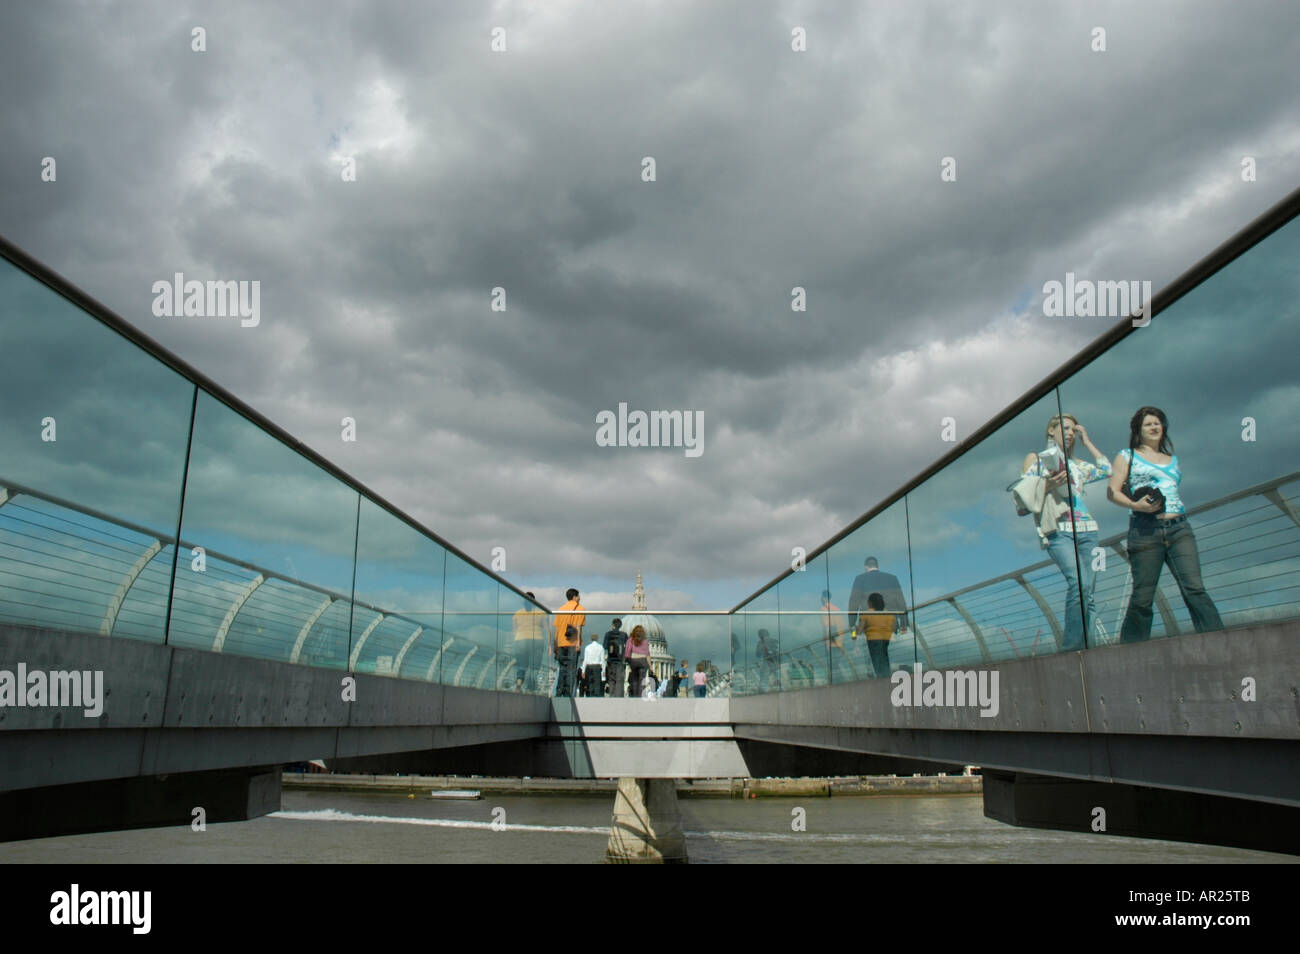 Les gens de marcher à travers le pont du millénaire avec la Cathédrale St Paul à la distance, London, England, UK Banque D'Images